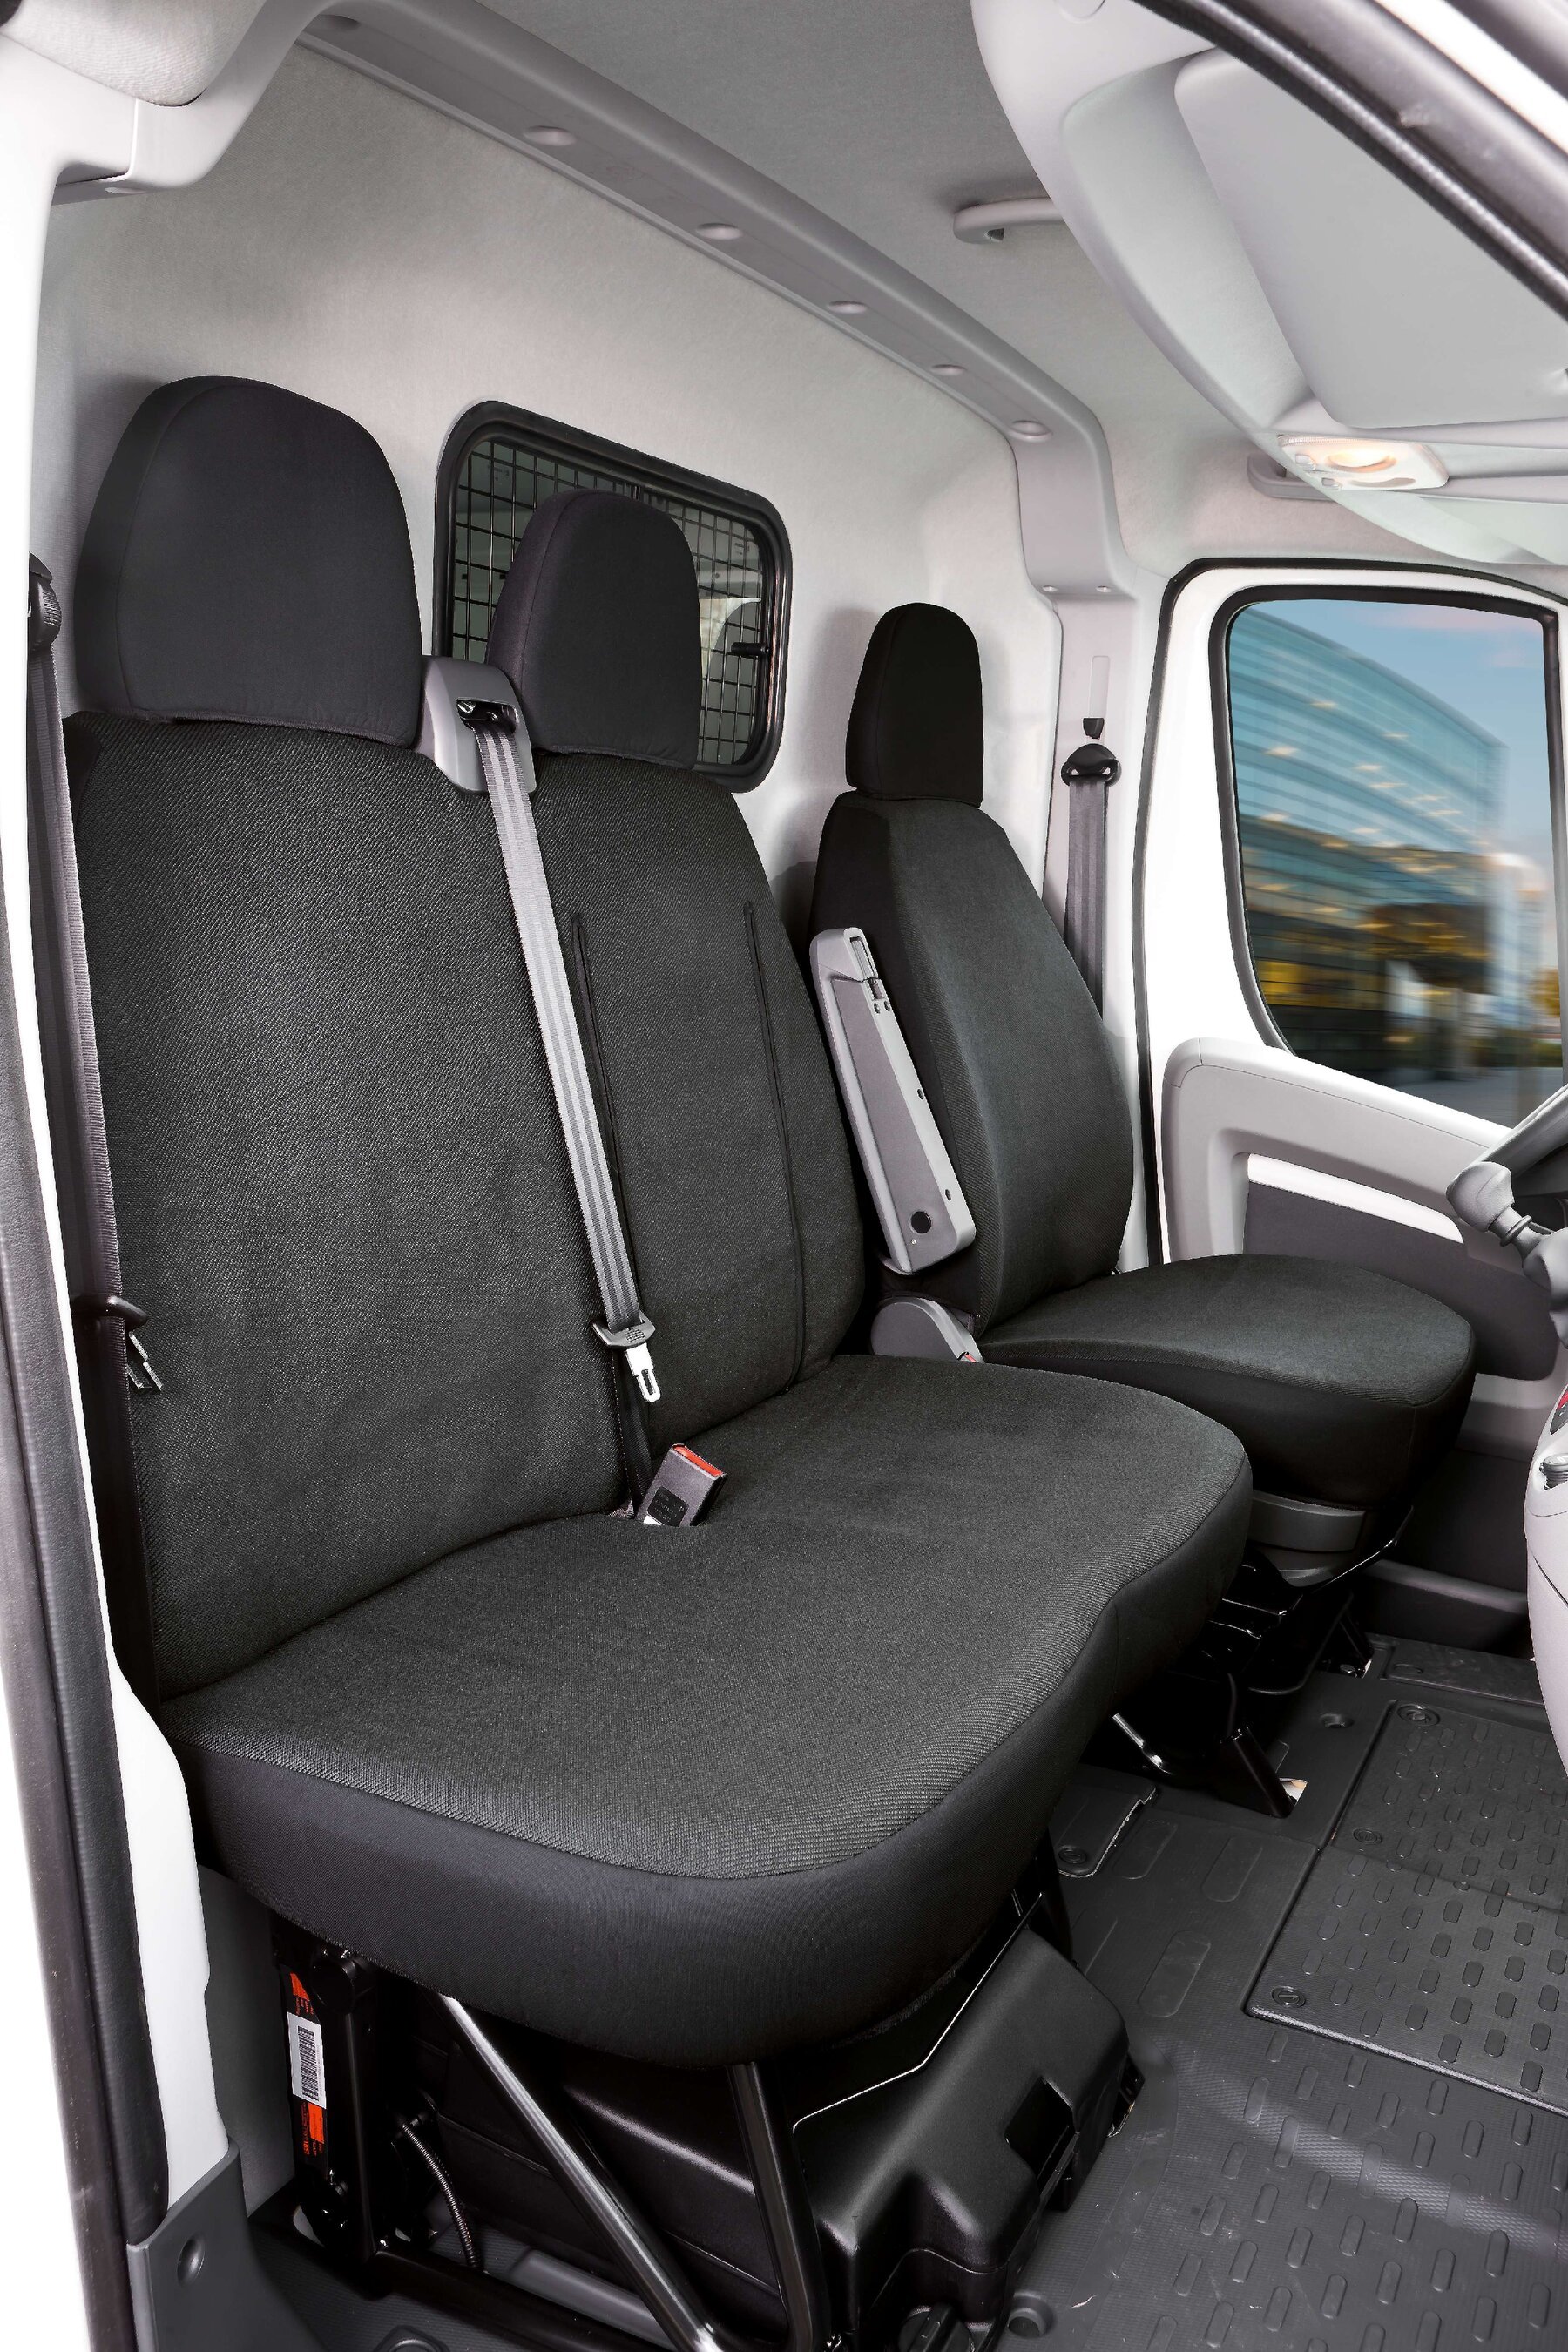 Housse de siège Transporter en tissu pour Fiat Ducato, siège simple et double